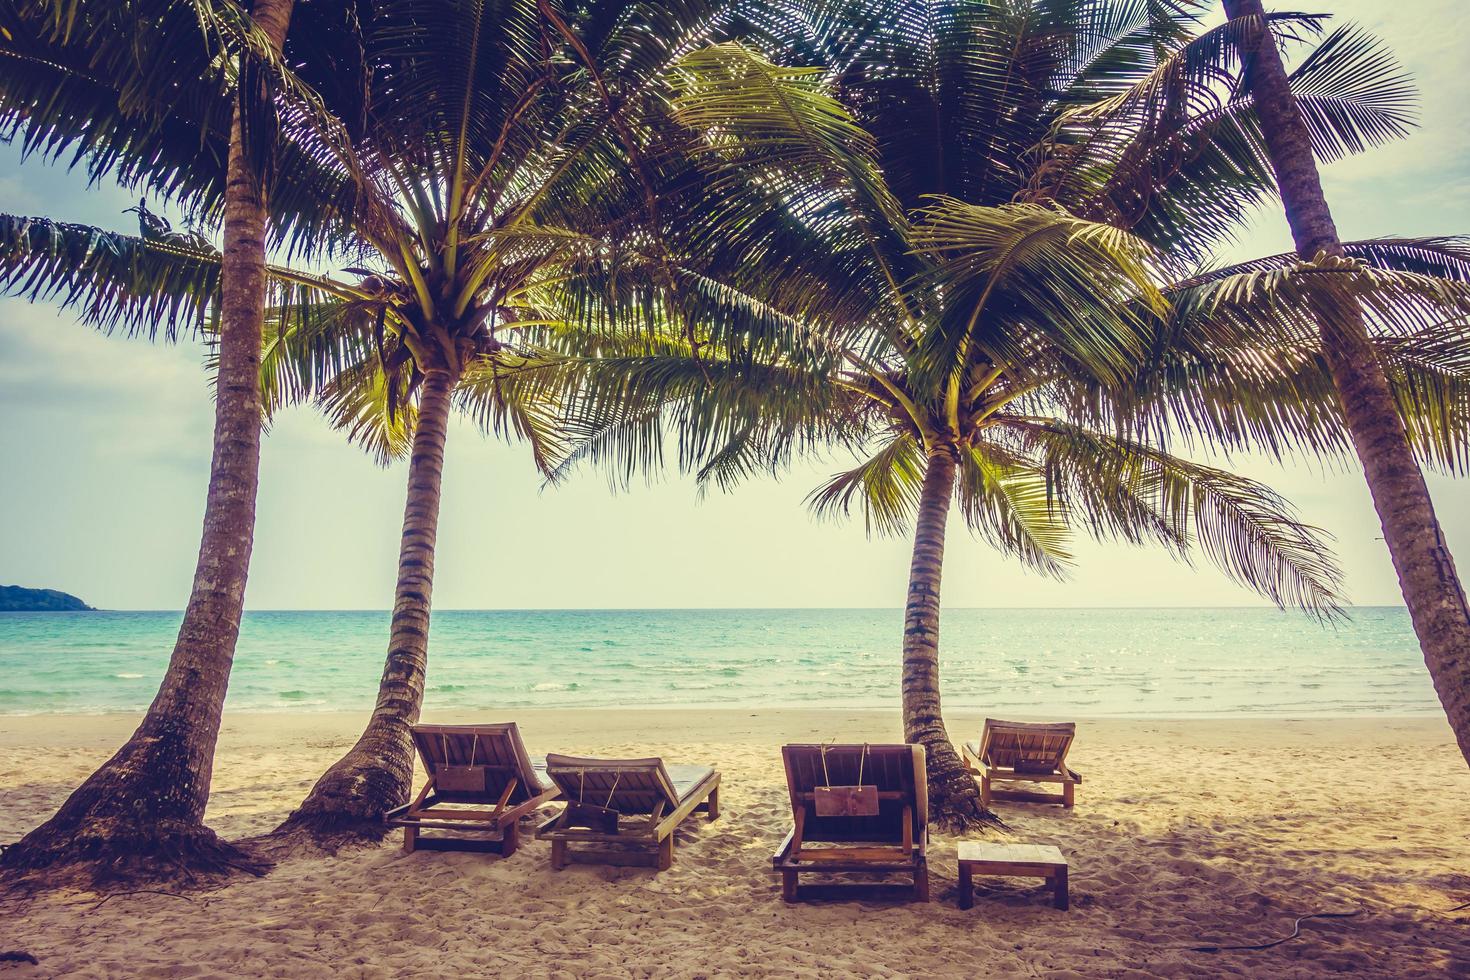 praia tropical com palmeiras foto